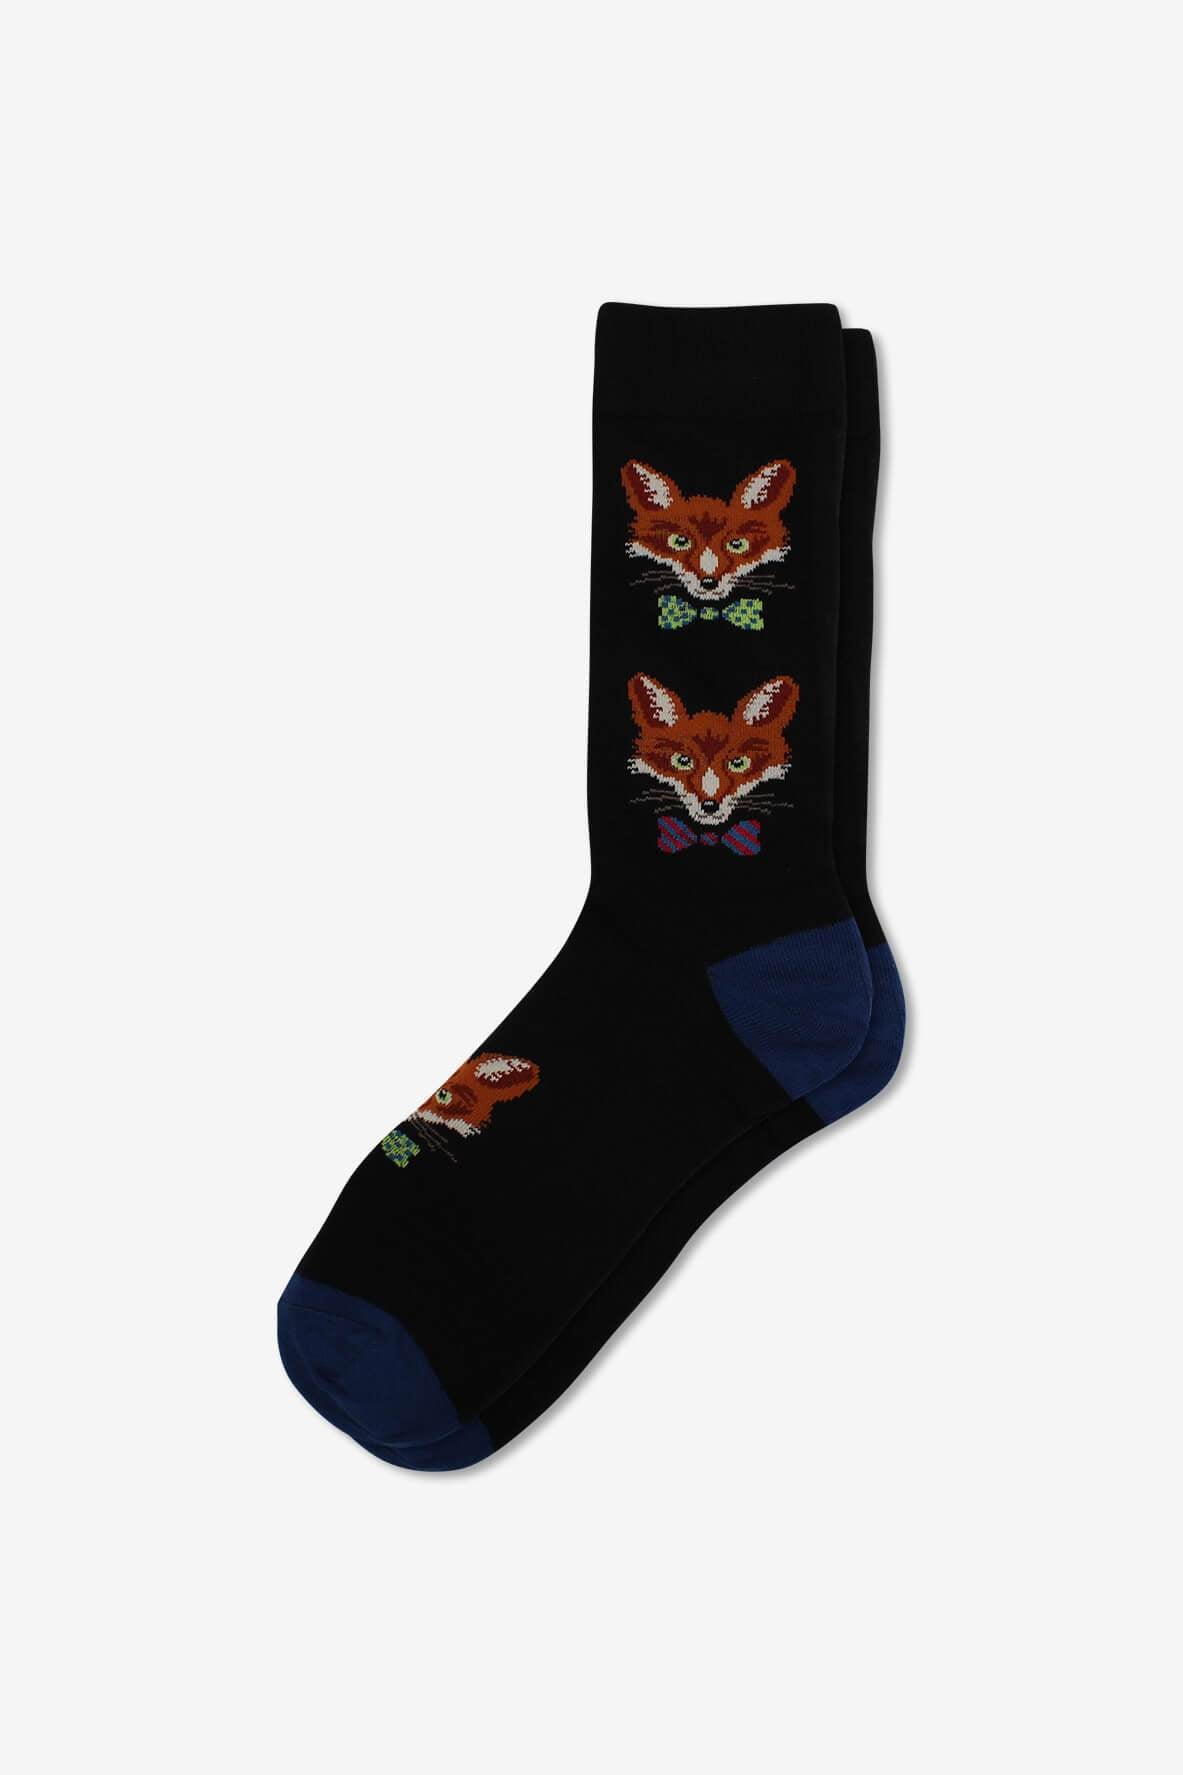 Socks IMG_5279, socks, GoTie